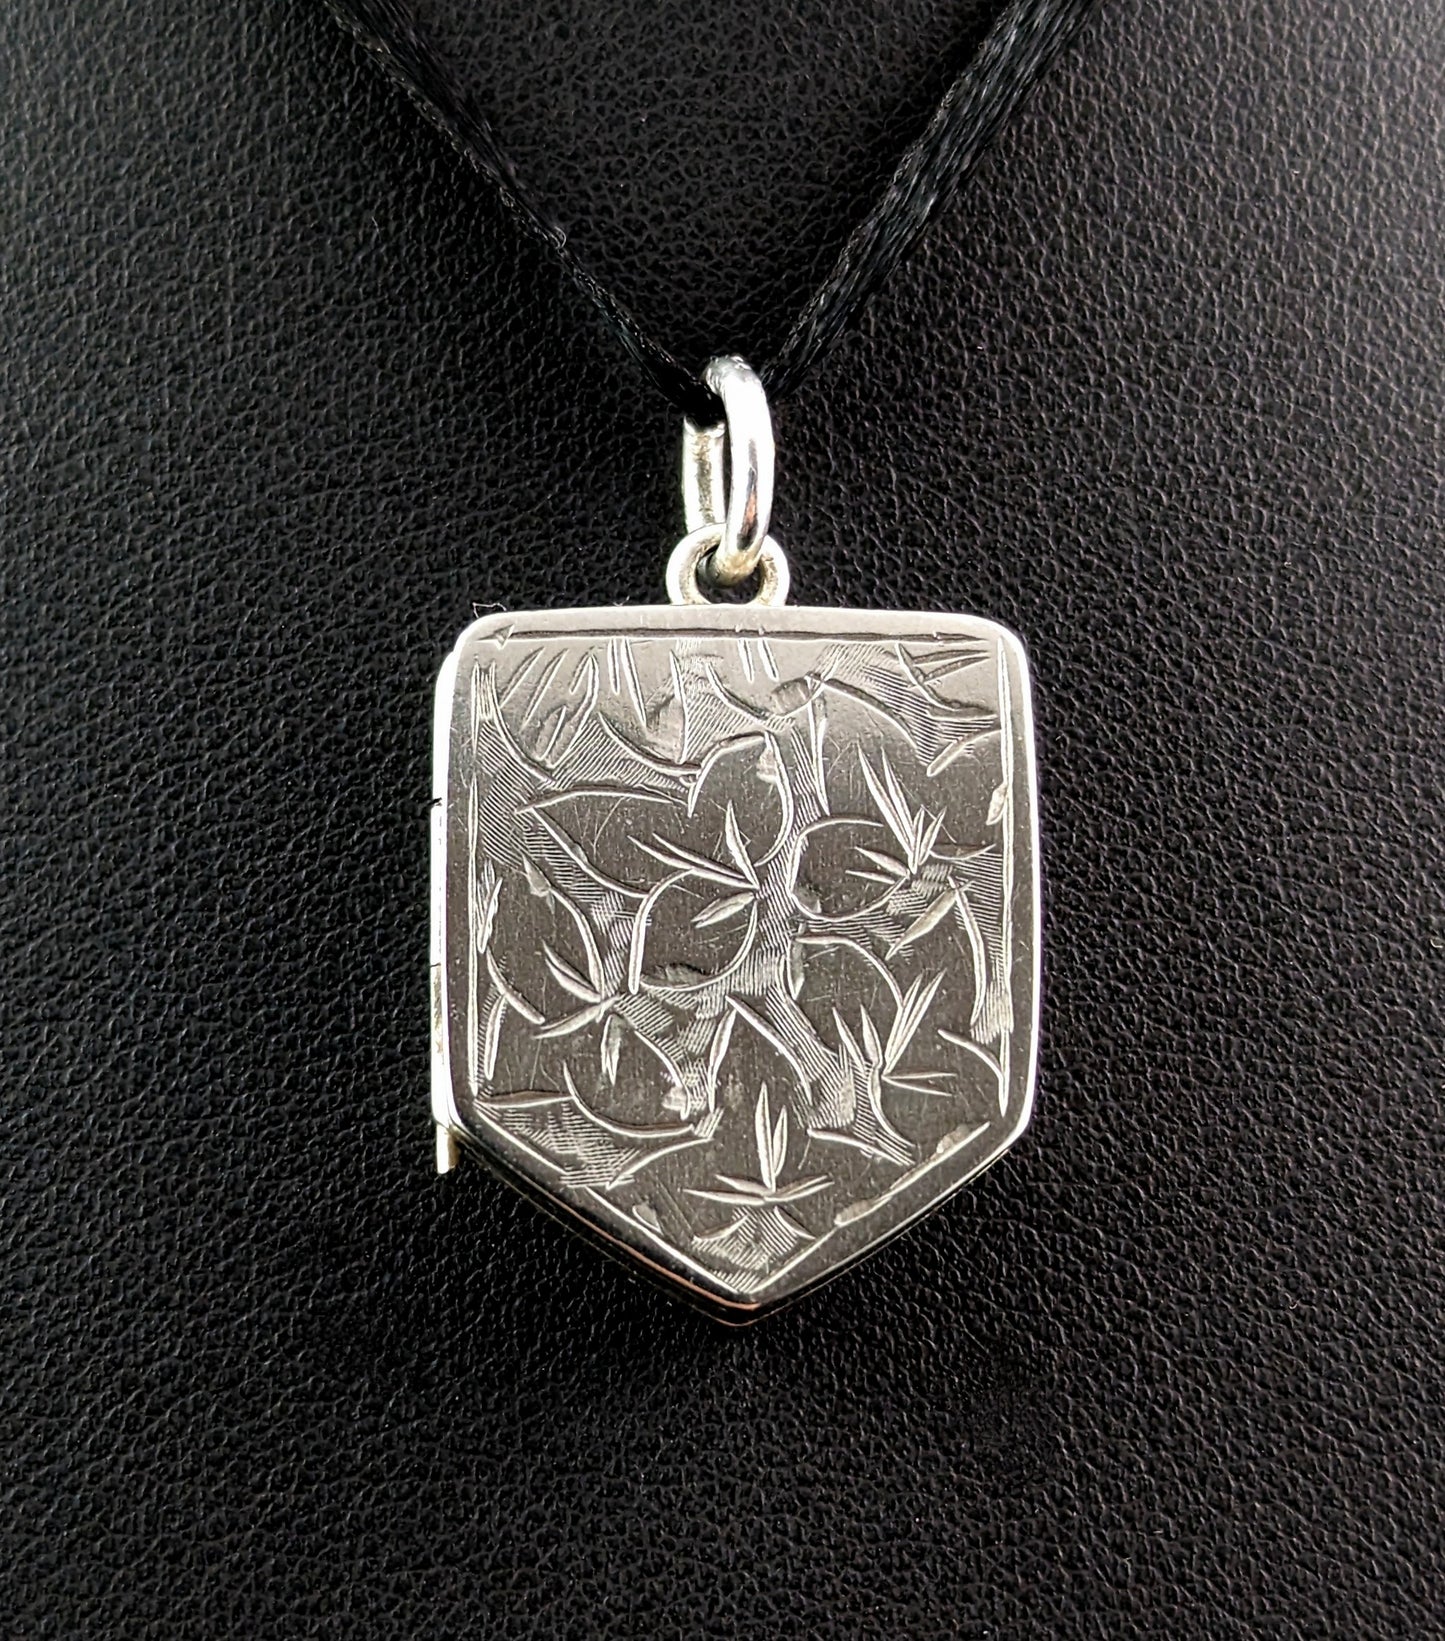 Antique silver locket pendant, Shield shaped, leaf engraved